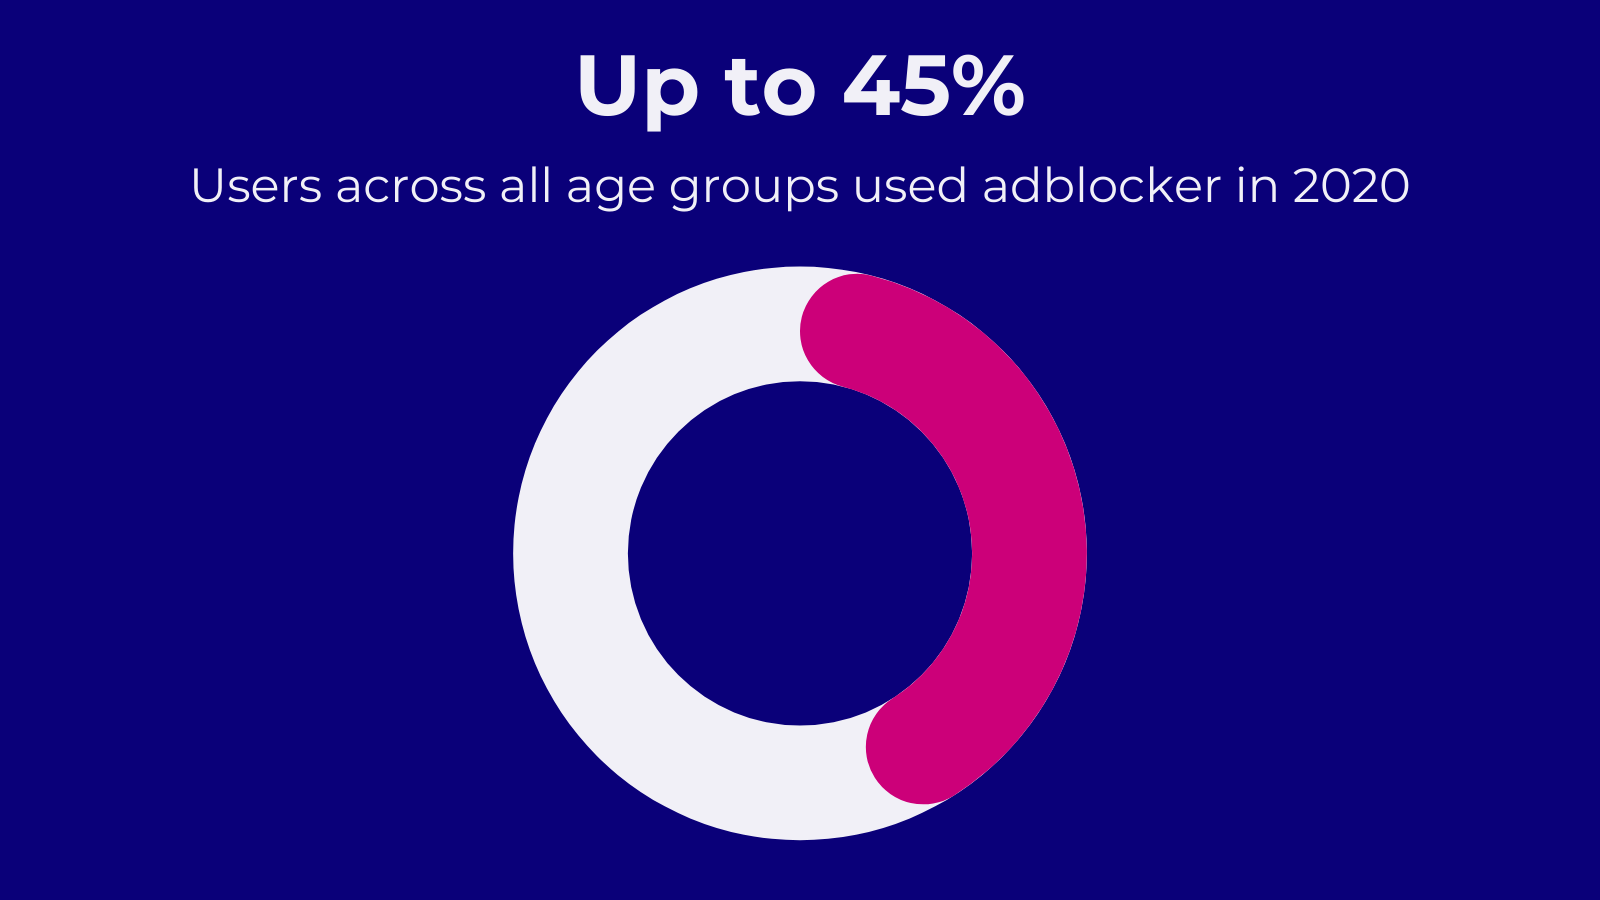 Fast die Hälfte der Nutzer über alle Altersgruppen hinweg verwenden Adblocker